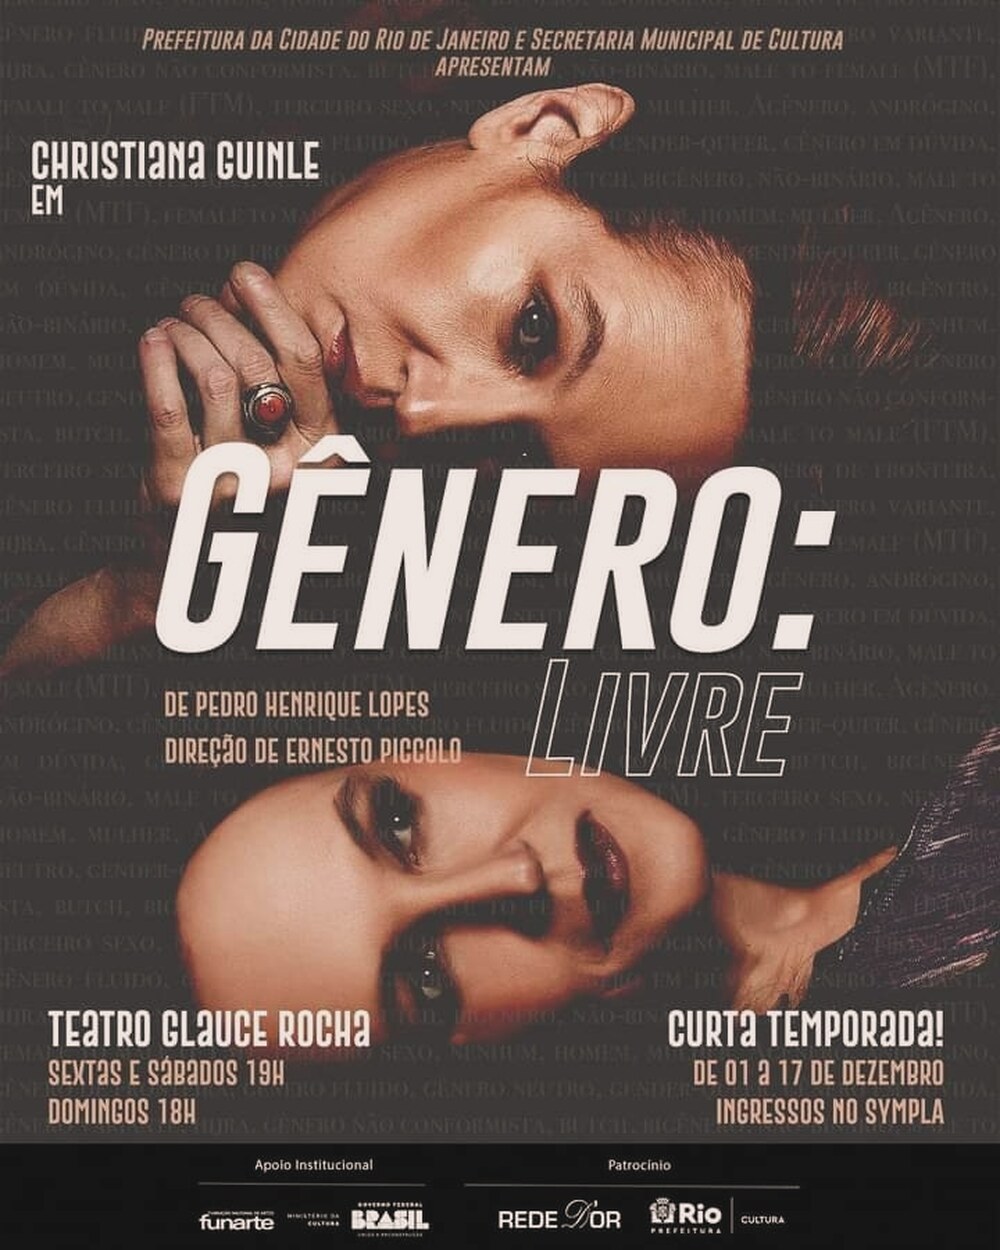 Monólogo 'Gênero: livre' de Ernesto Piccolo, inspirado na vida de Christiana Guinle, retorna em 17 de janeiro no Teatro Glauce Rocha